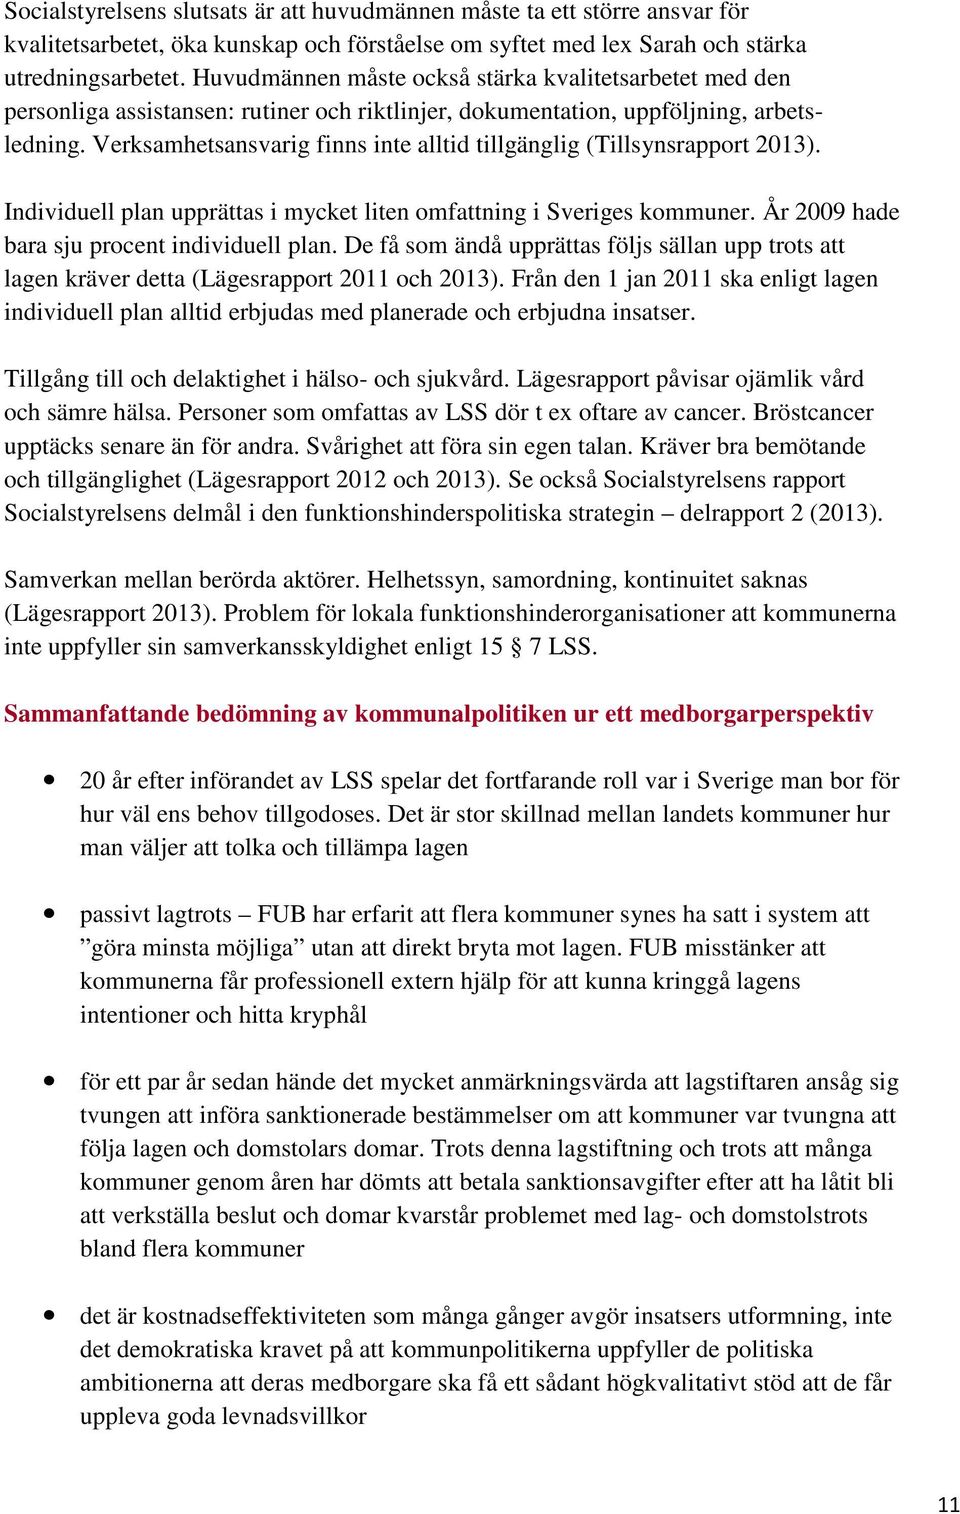 Verksamhetsansvarig finns inte alltid tillgänglig (Tillsynsrapport 2013). Individuell plan upprättas i mycket liten omfattning i Sveriges kommuner. År 2009 hade bara sju procent individuell plan.